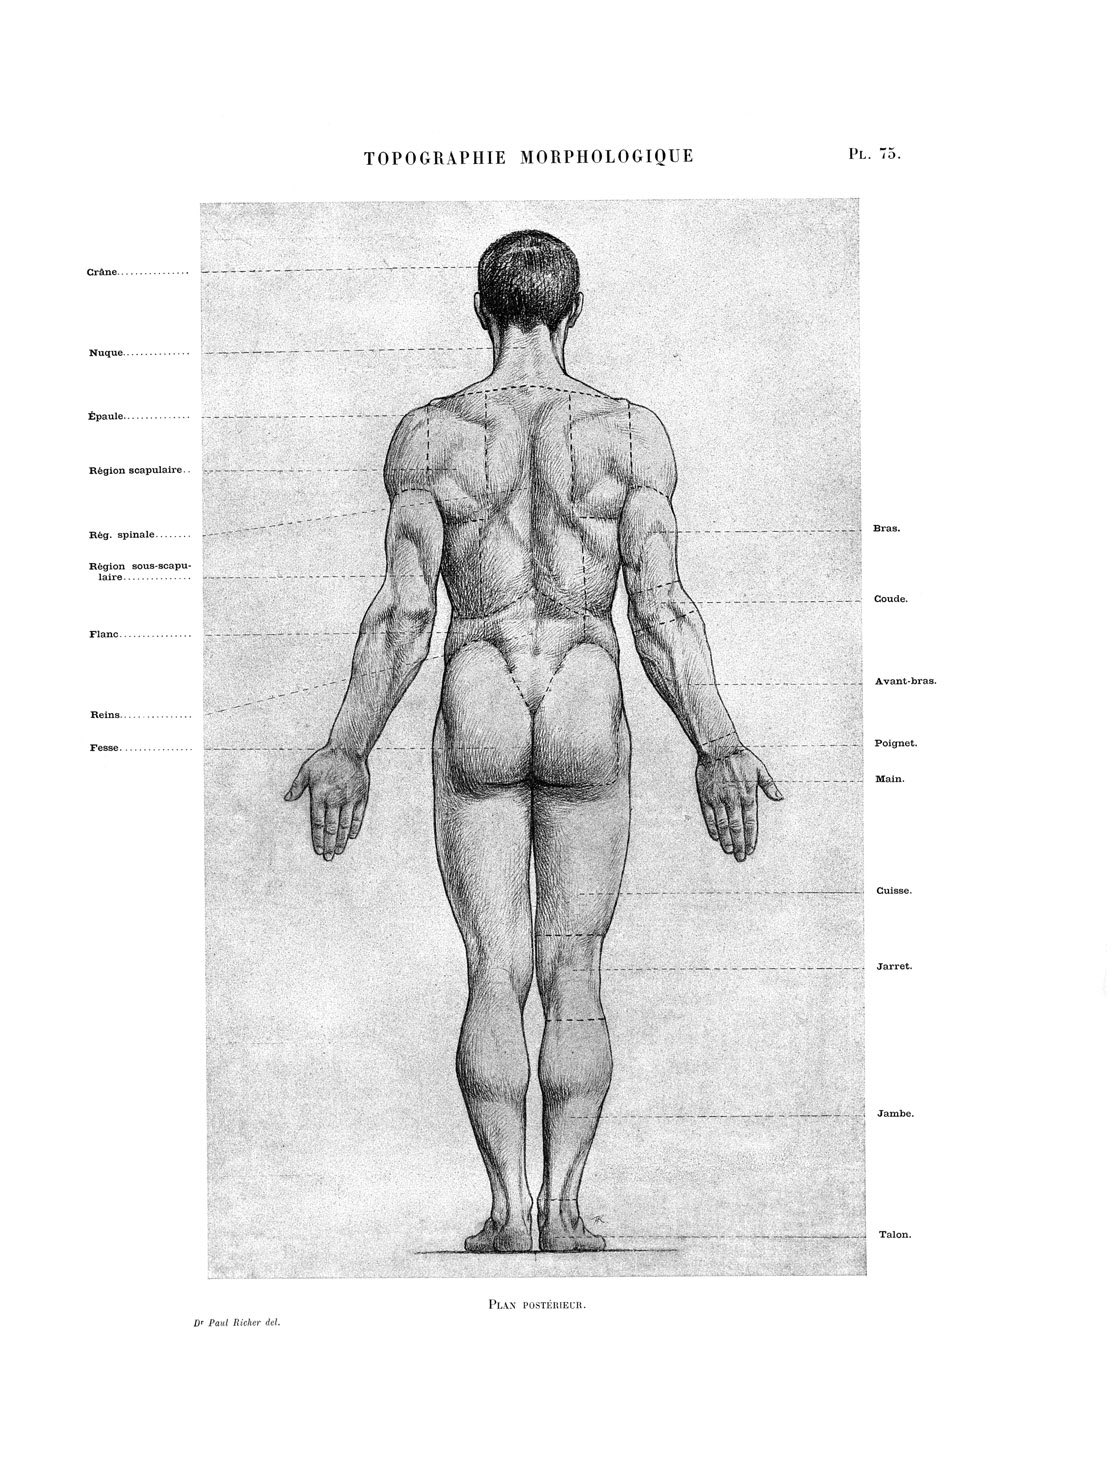 伊豆の美術解剖学者 解剖学的正位 現代の解剖学書はほぼ全てこの姿勢が採用されている 美術解剖学では 1845年の教科書から見られ その後徐々に採用された この姿勢の採用によって同一姿勢の正確な三面図 前面 後面 内 外側面 が描かれるようになり